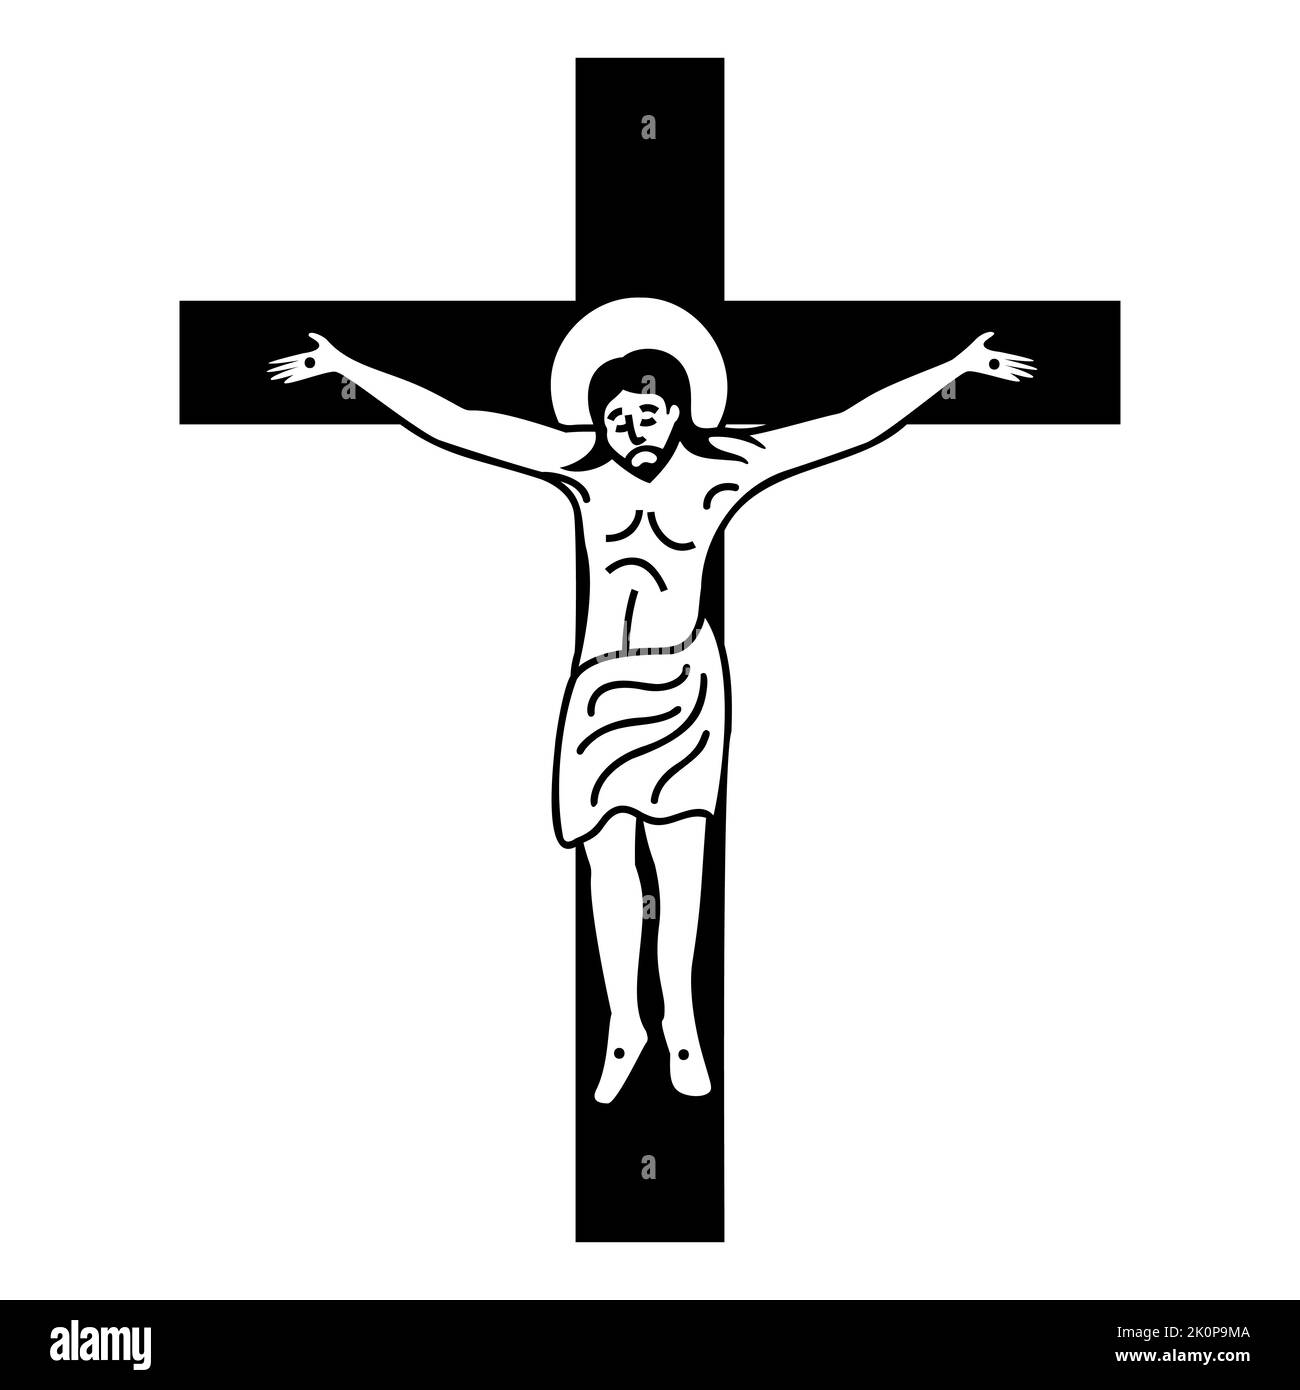 Schwarze Ikone der Kreuzigung Christi am Kreuz. Biblische Geschichte. Flache Vektorgrafik. Stock Vektor